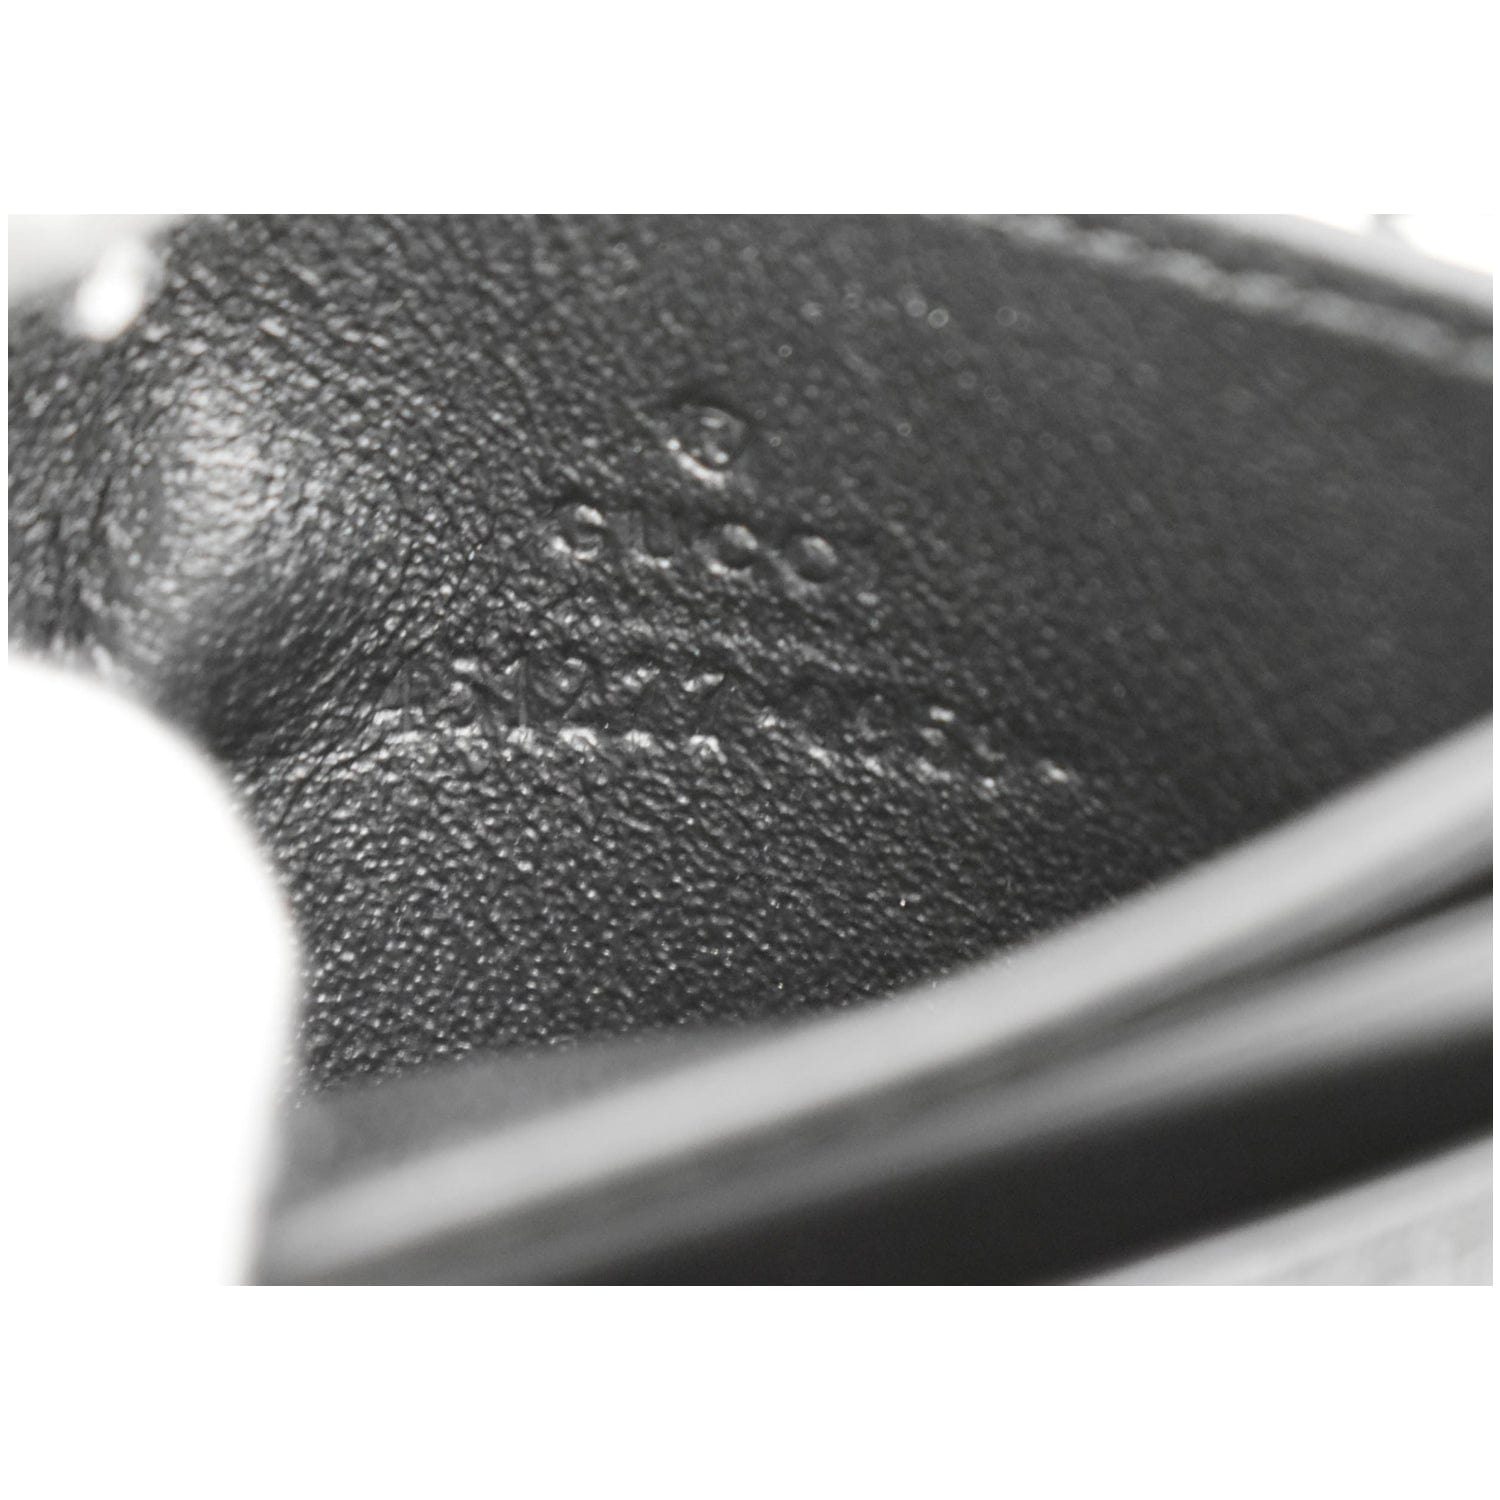 Gucci Kingsnake Print Shoulder Bag in Black